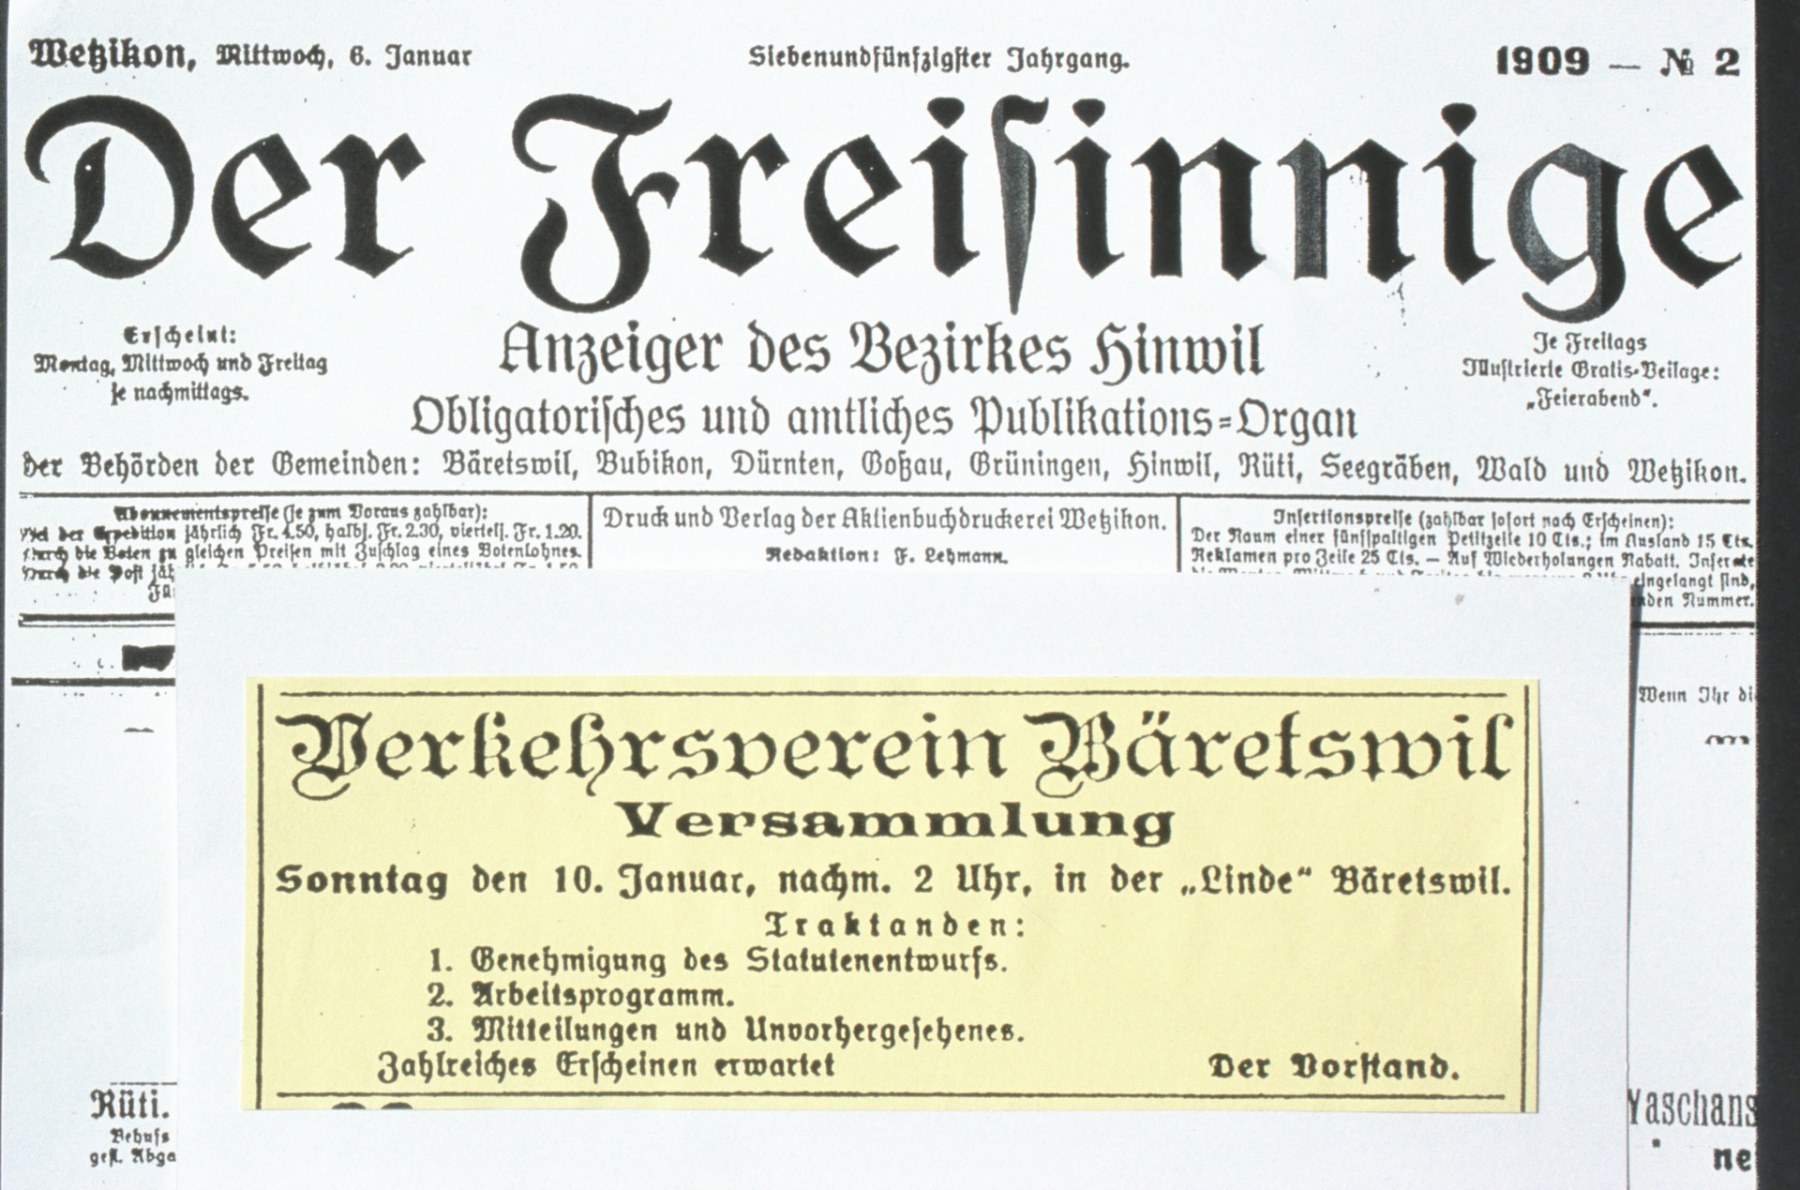 VVB 1909, Einladung zur Versammlung, Der Freisinnige